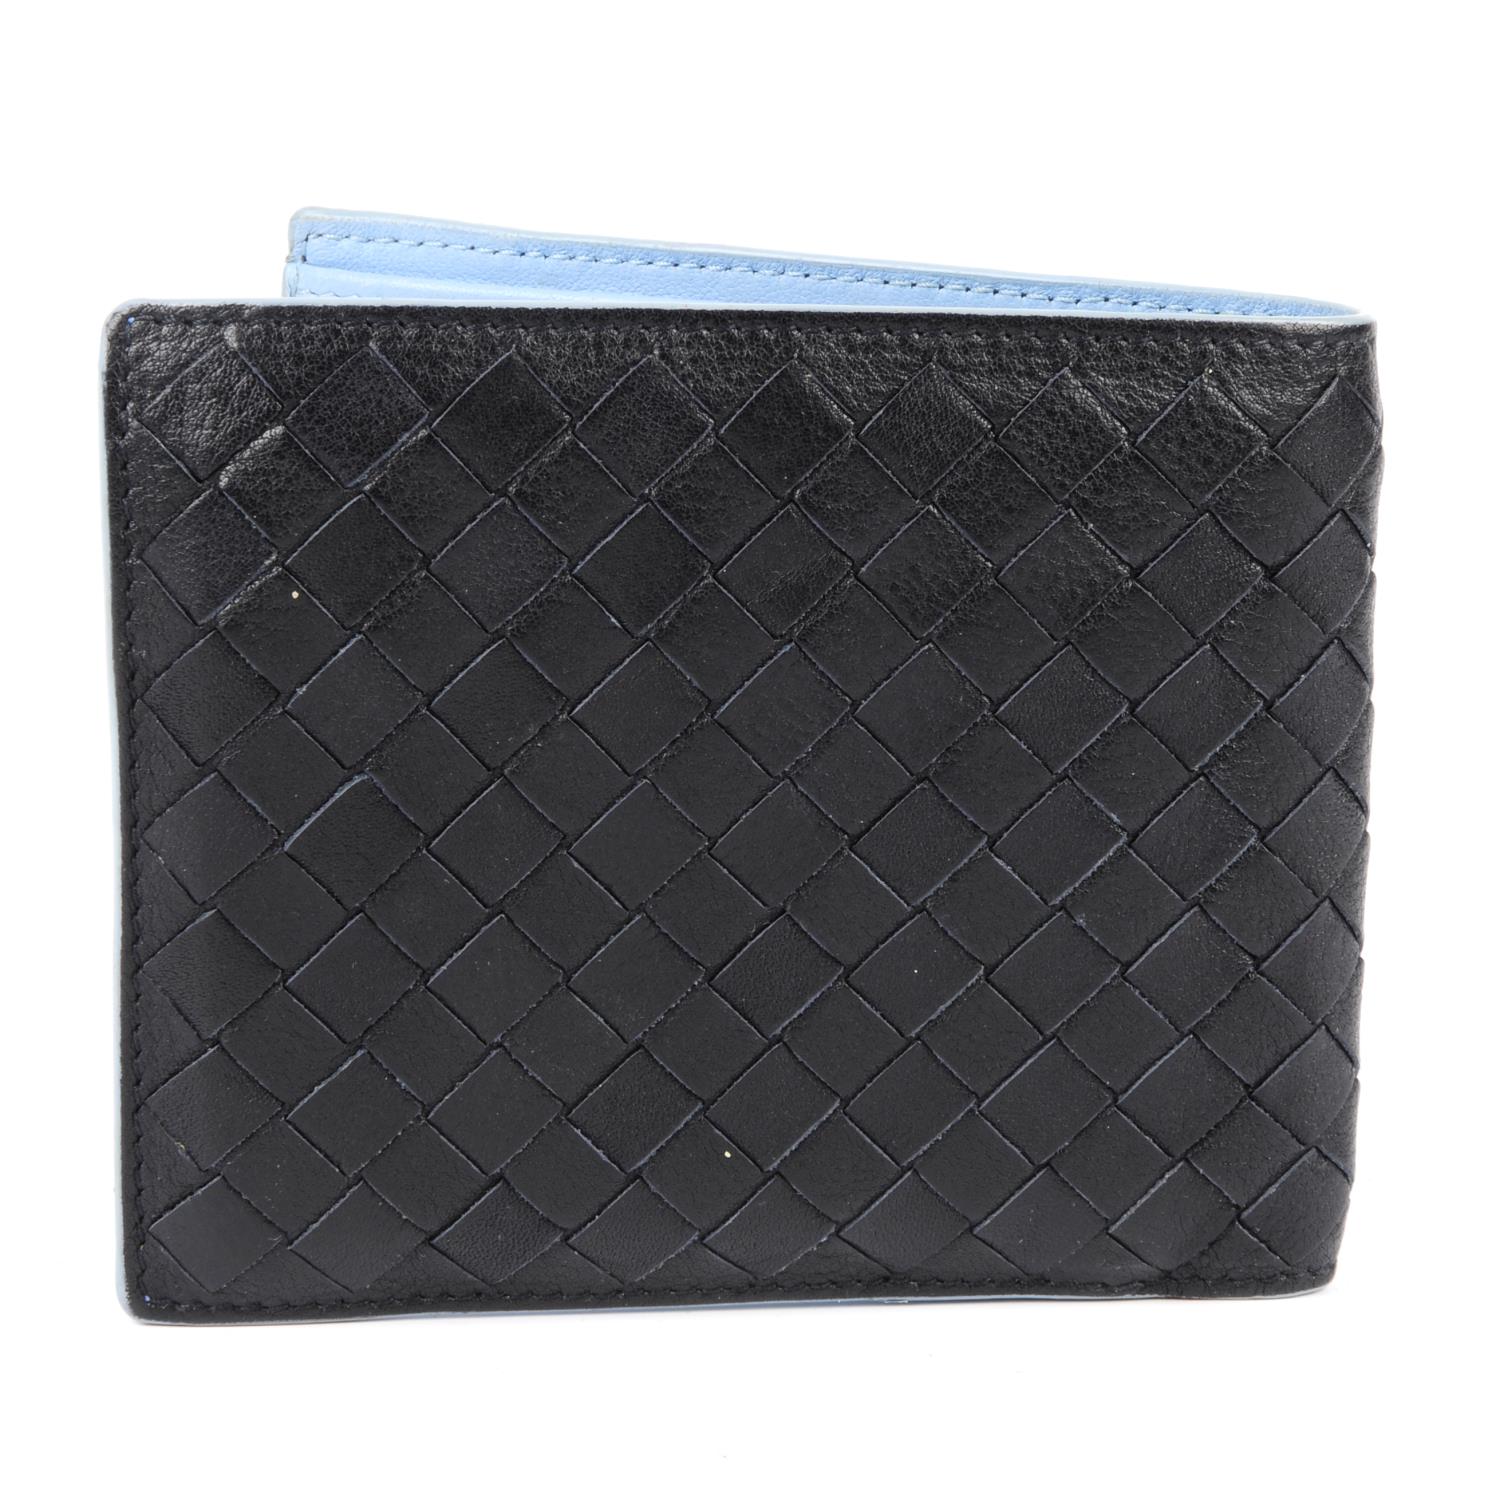 BOTTEGA VENETA - an Intrecciato leather bifold wallet. - Image 2 of 3